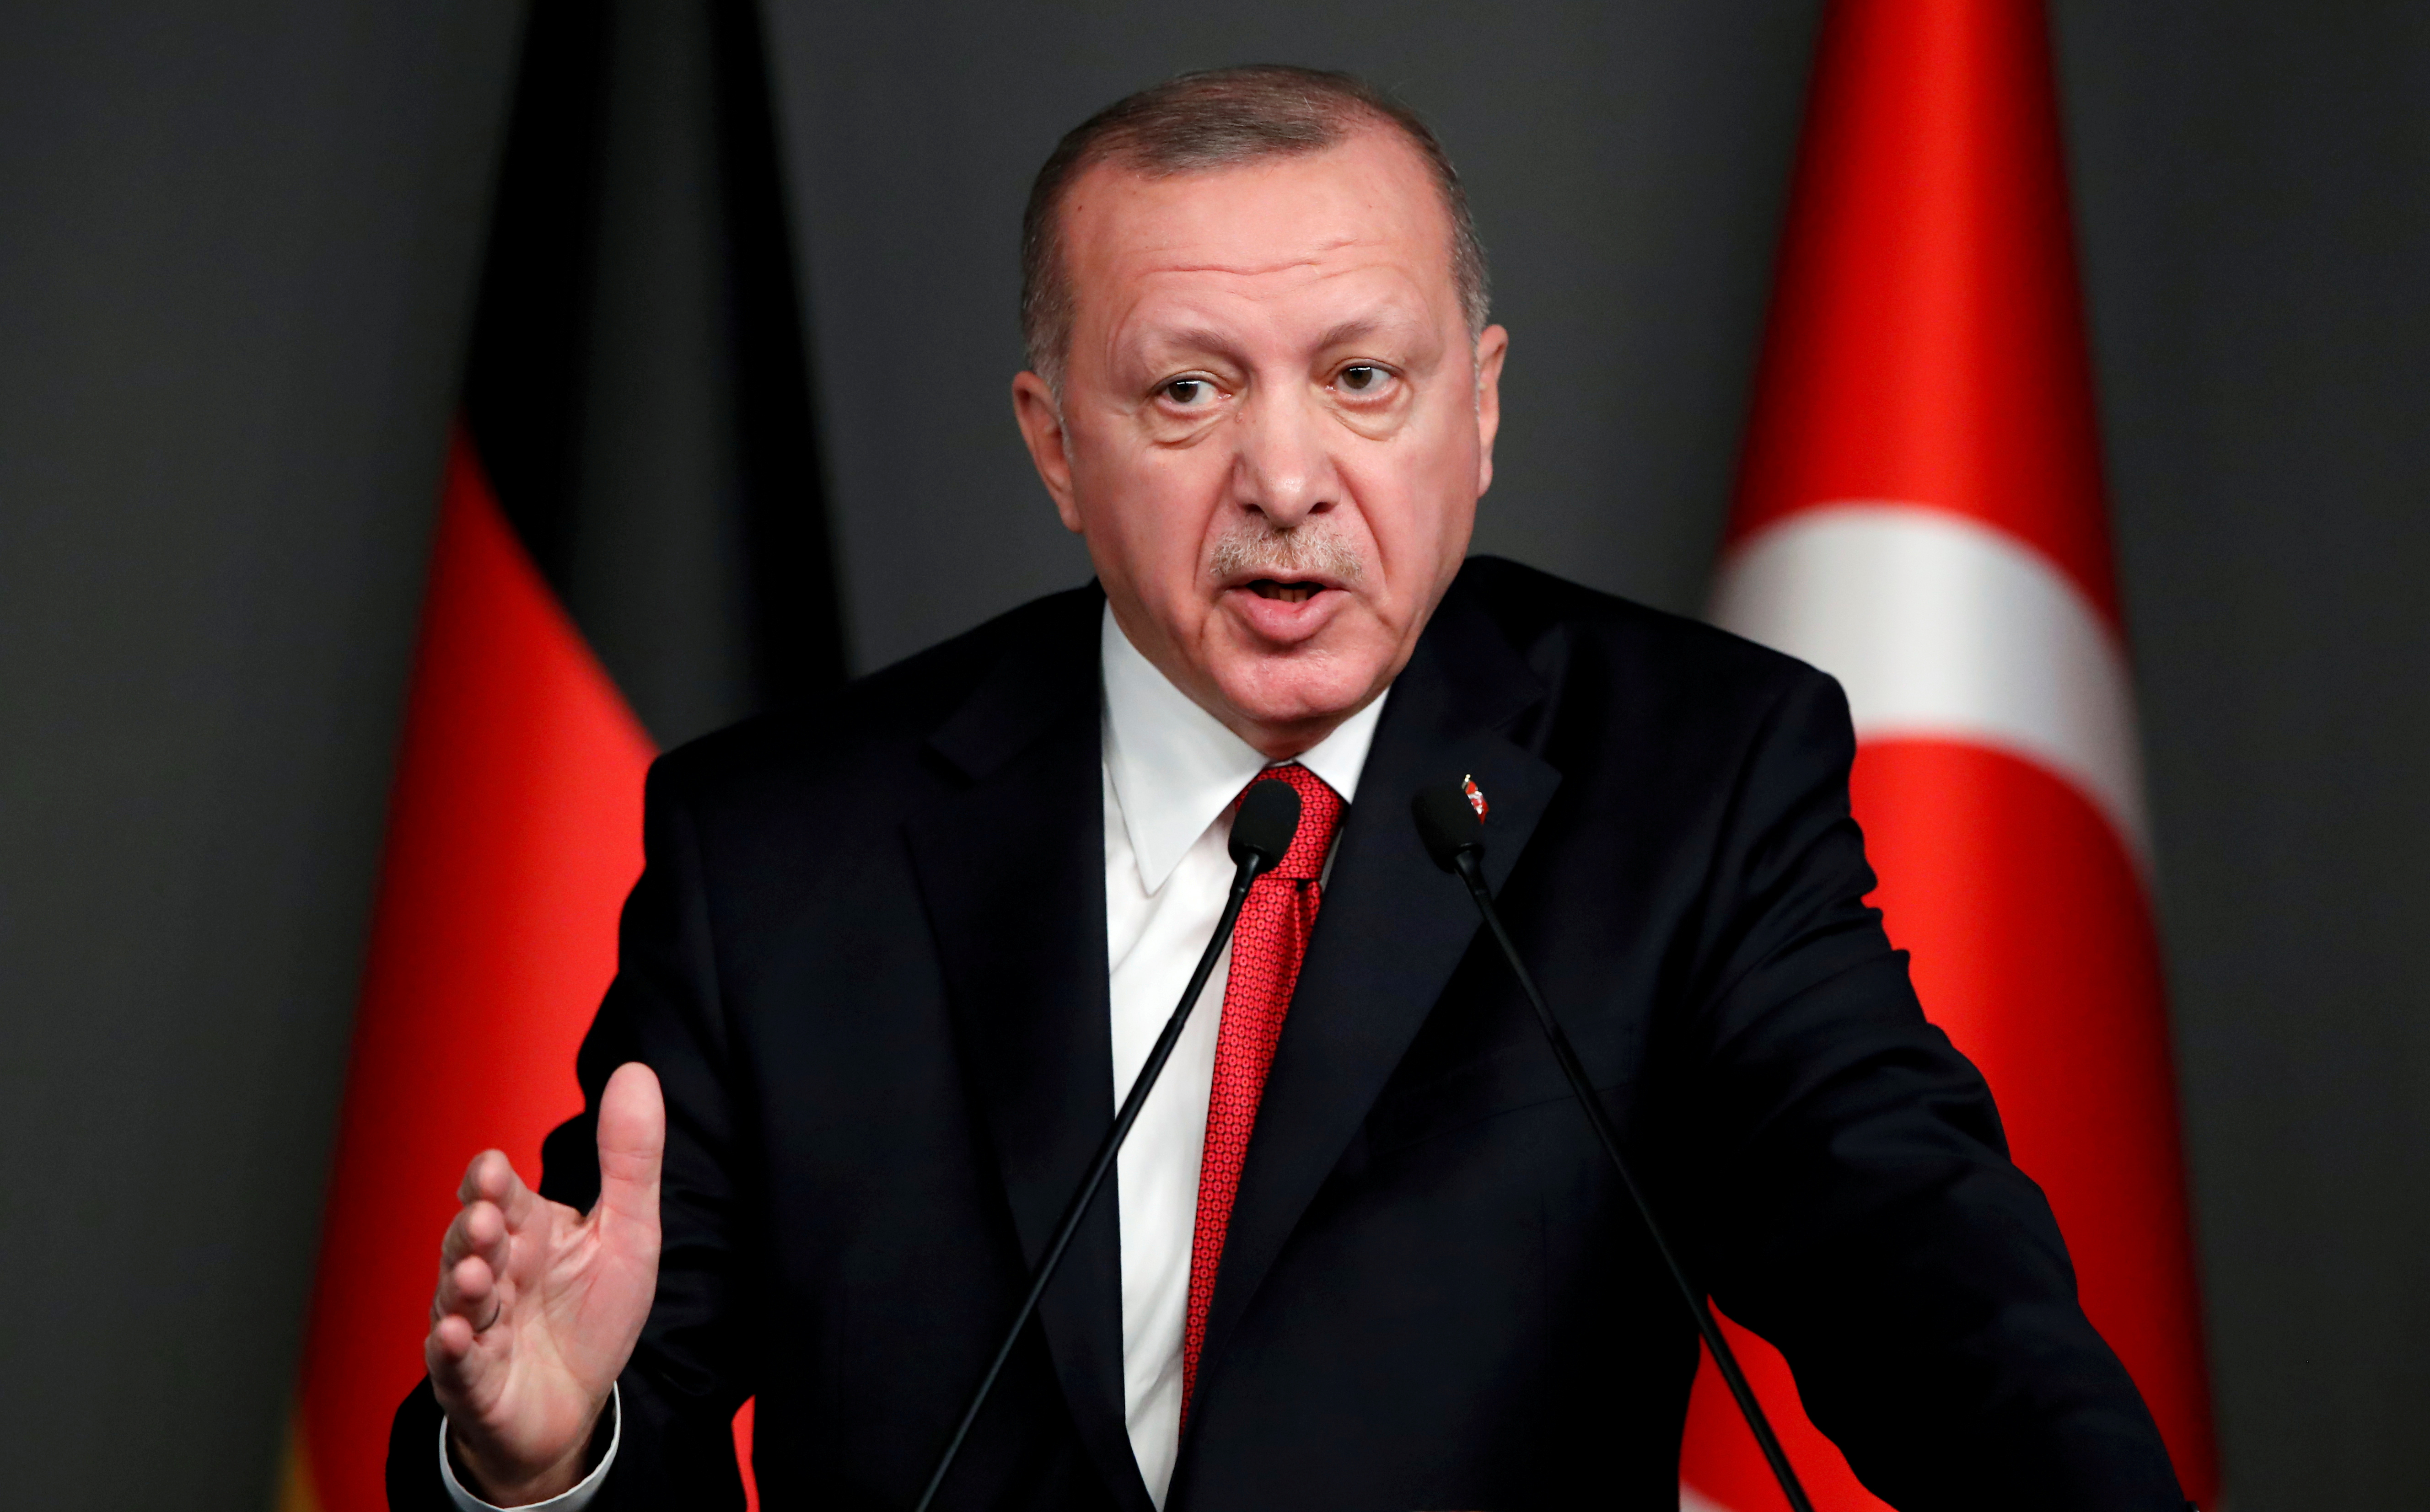 ¿Pidiendo cacao? Erdogan dice estar abierto a hablar con Grecia sobre tensiones marítimas